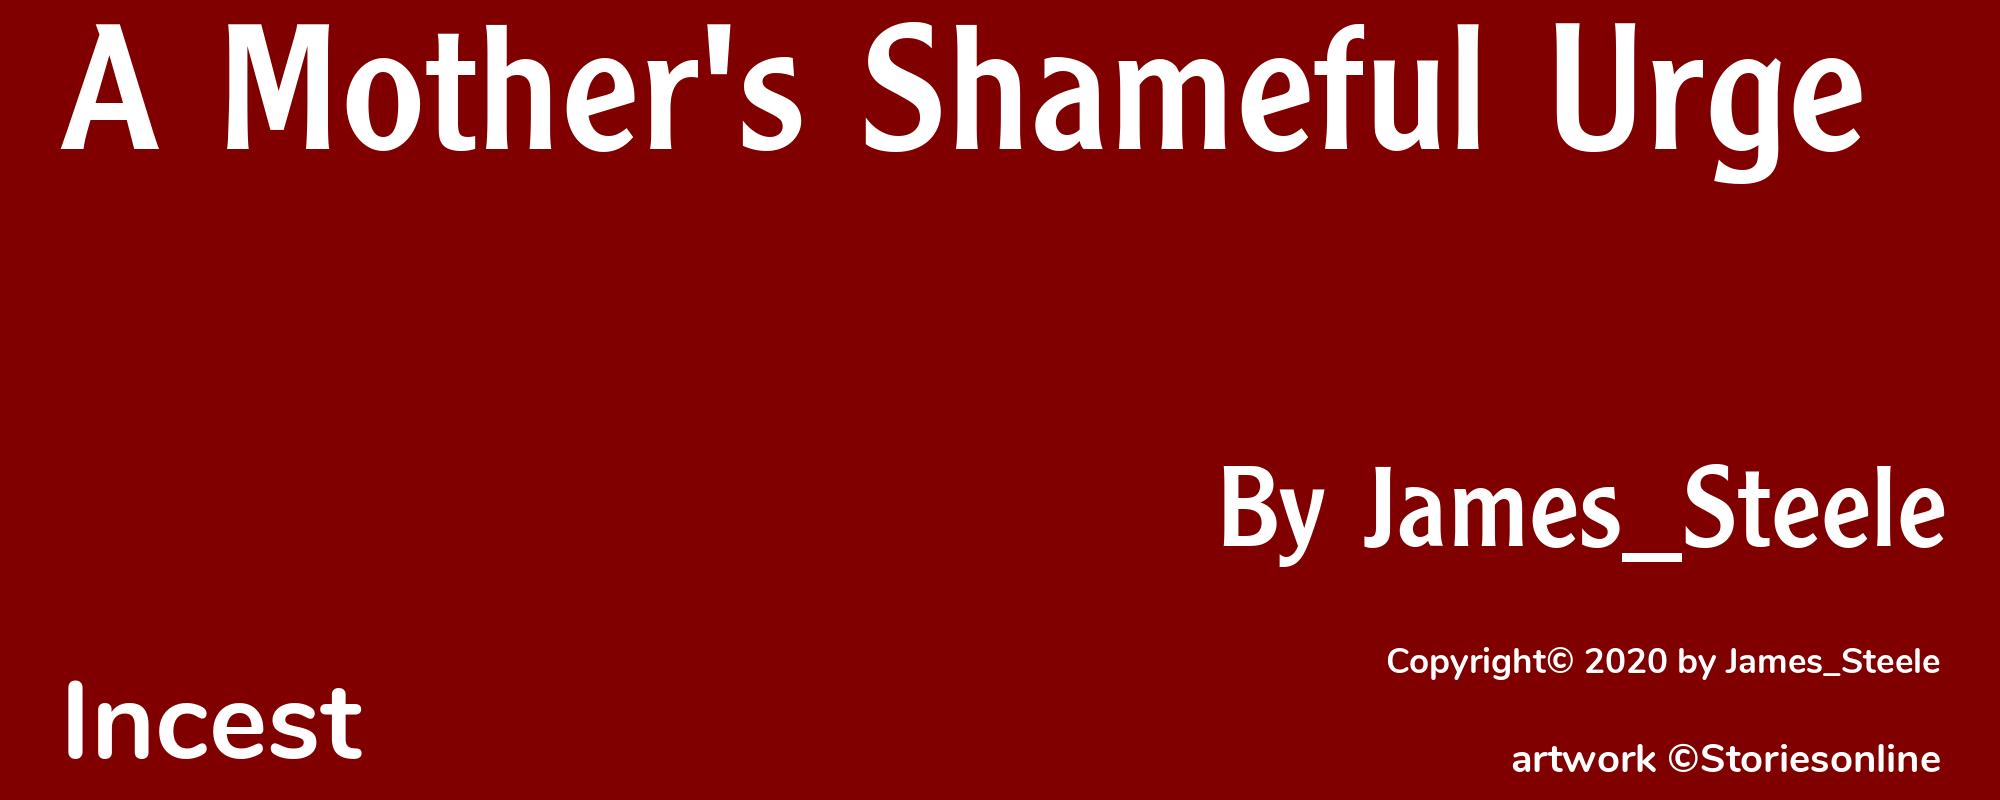 A Mother's Shameful Urge - Cover